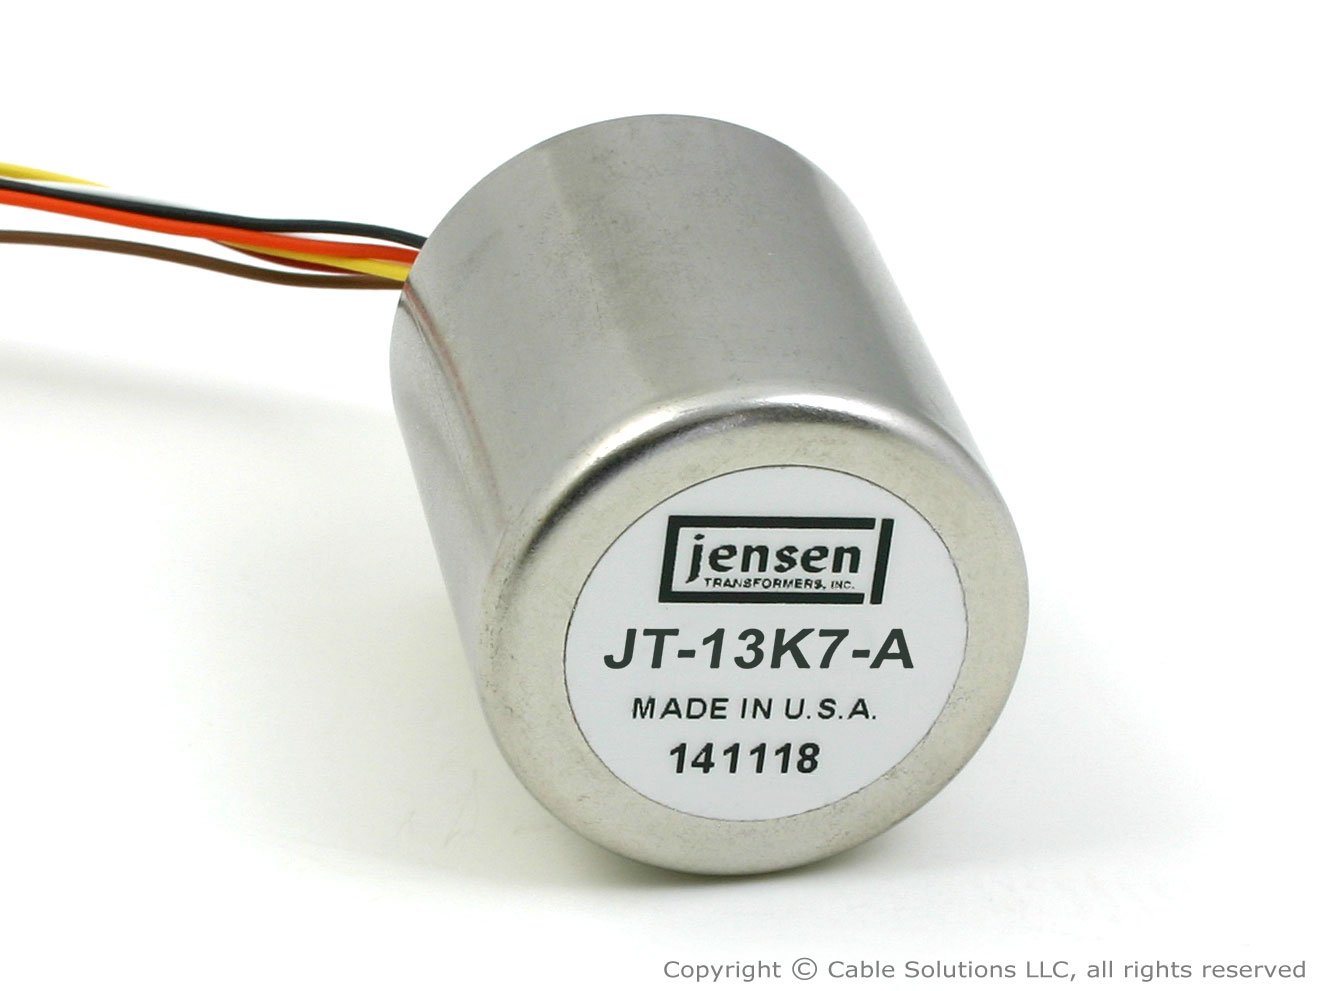 Jensen Transformers JT-13K7-A 1:5 Microphone Input Step-Up Transformer